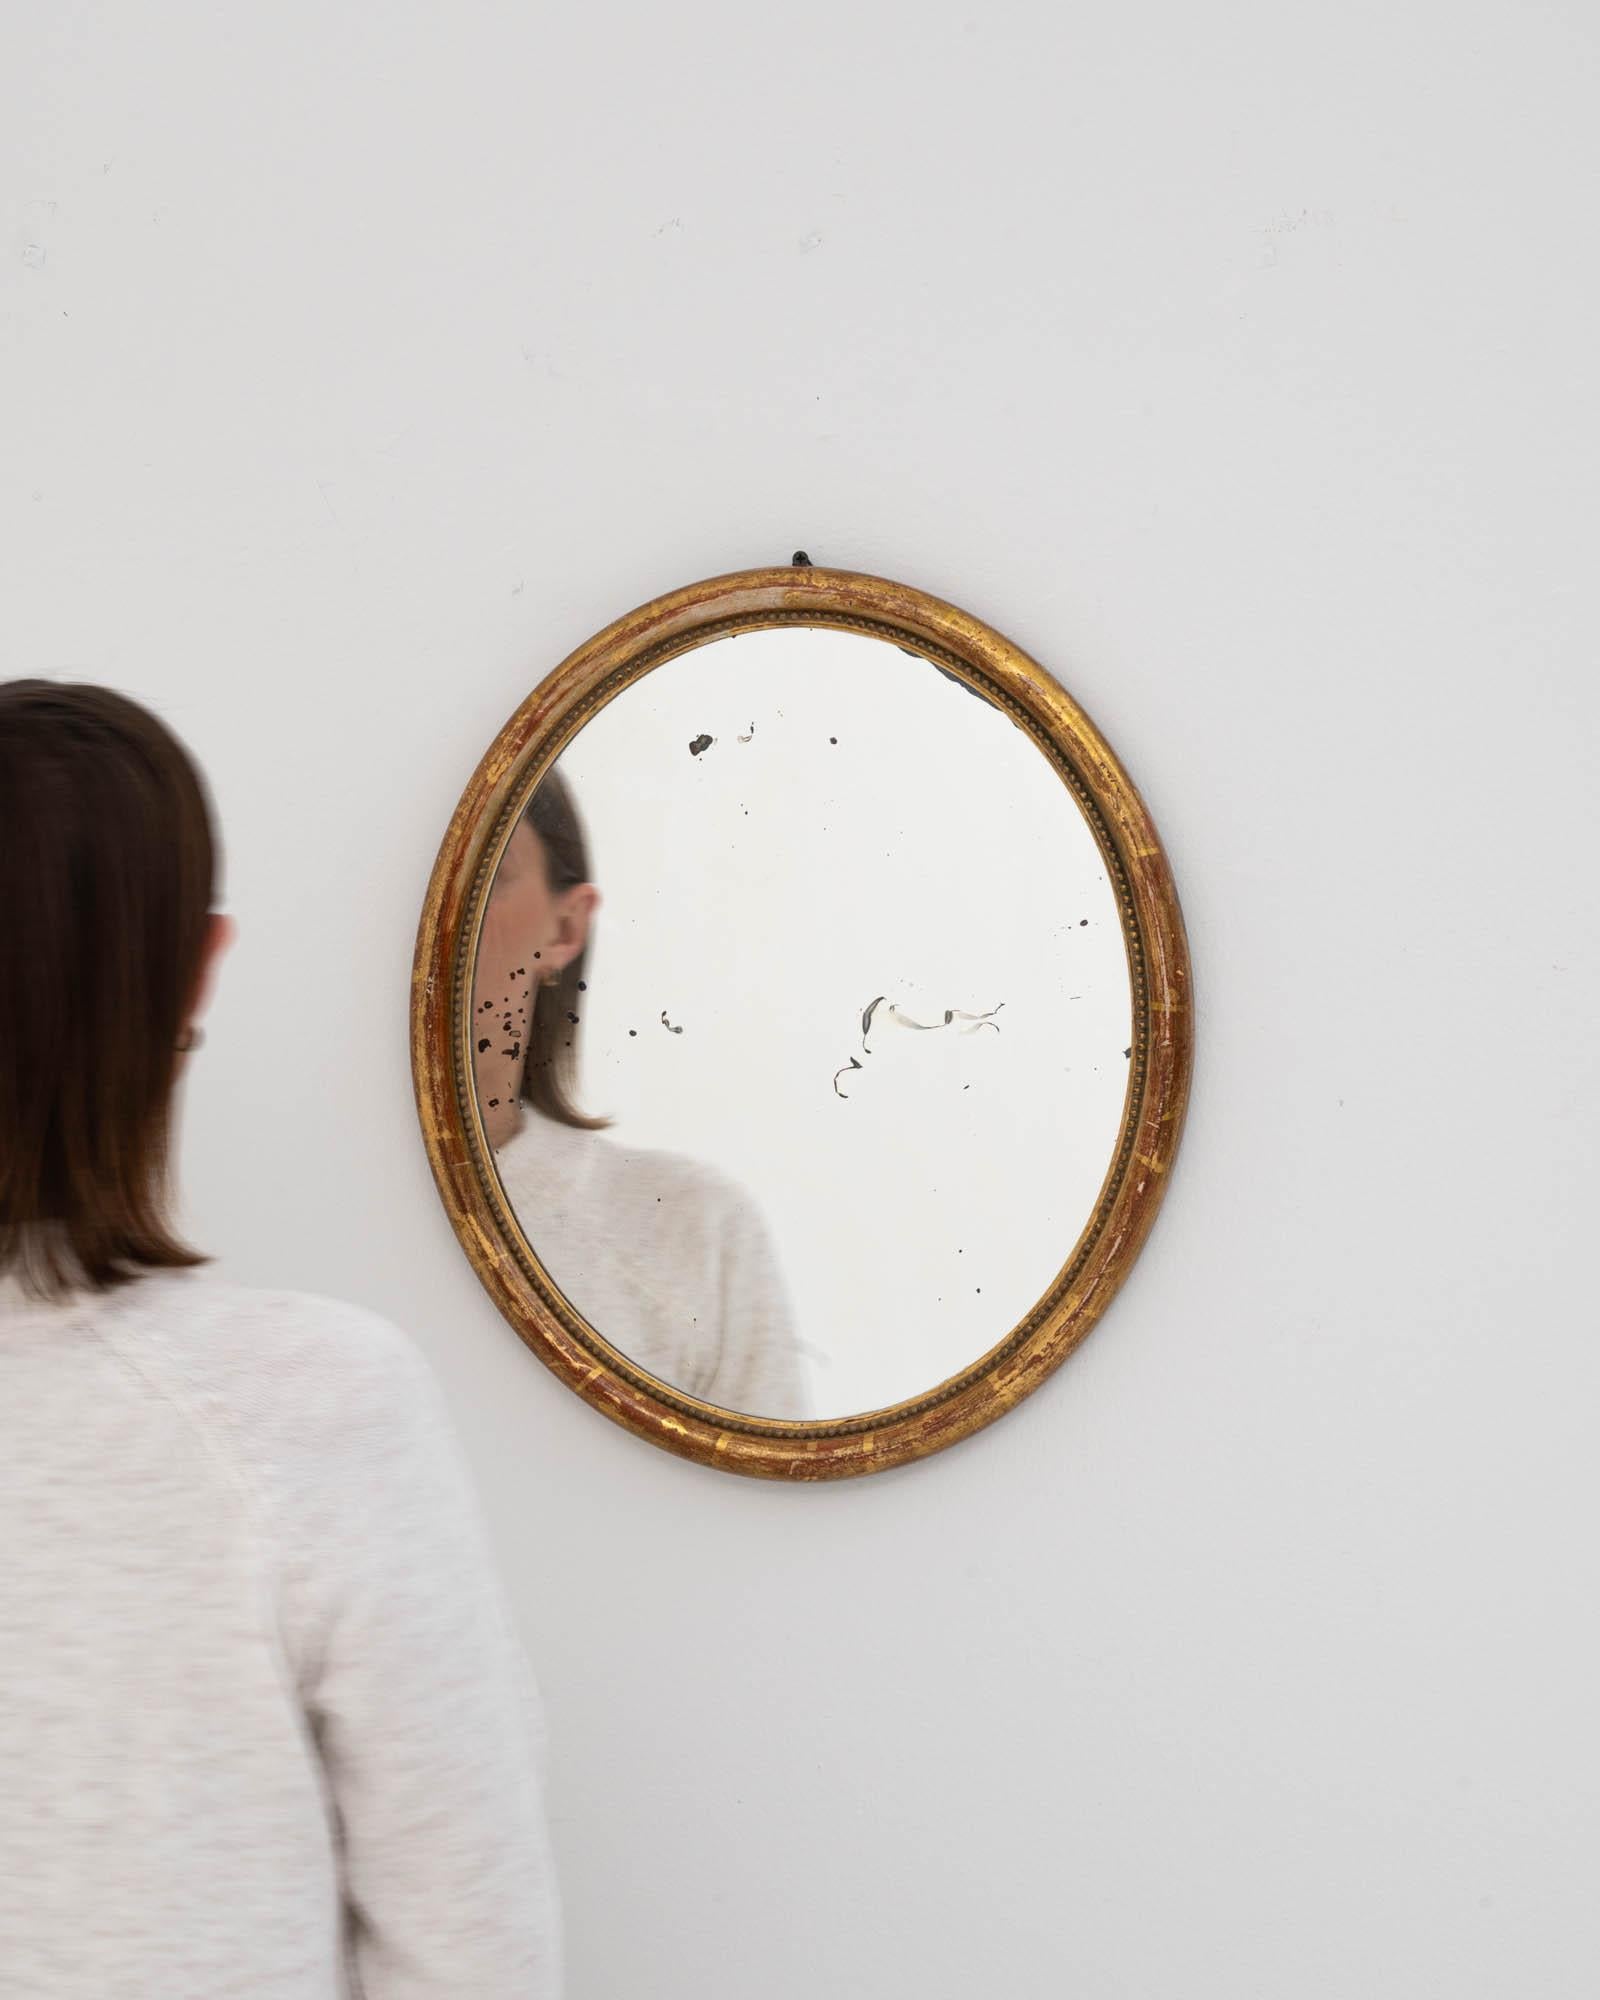 Ce miroir en bois doré français du XIXe siècle dégage un charme intemporel qui séduit par son élégance discrète. La dorure délicatement vieillie du cadre en bois apporte une touche de grandeur classique à votre espace, évoquant le décor luxueux